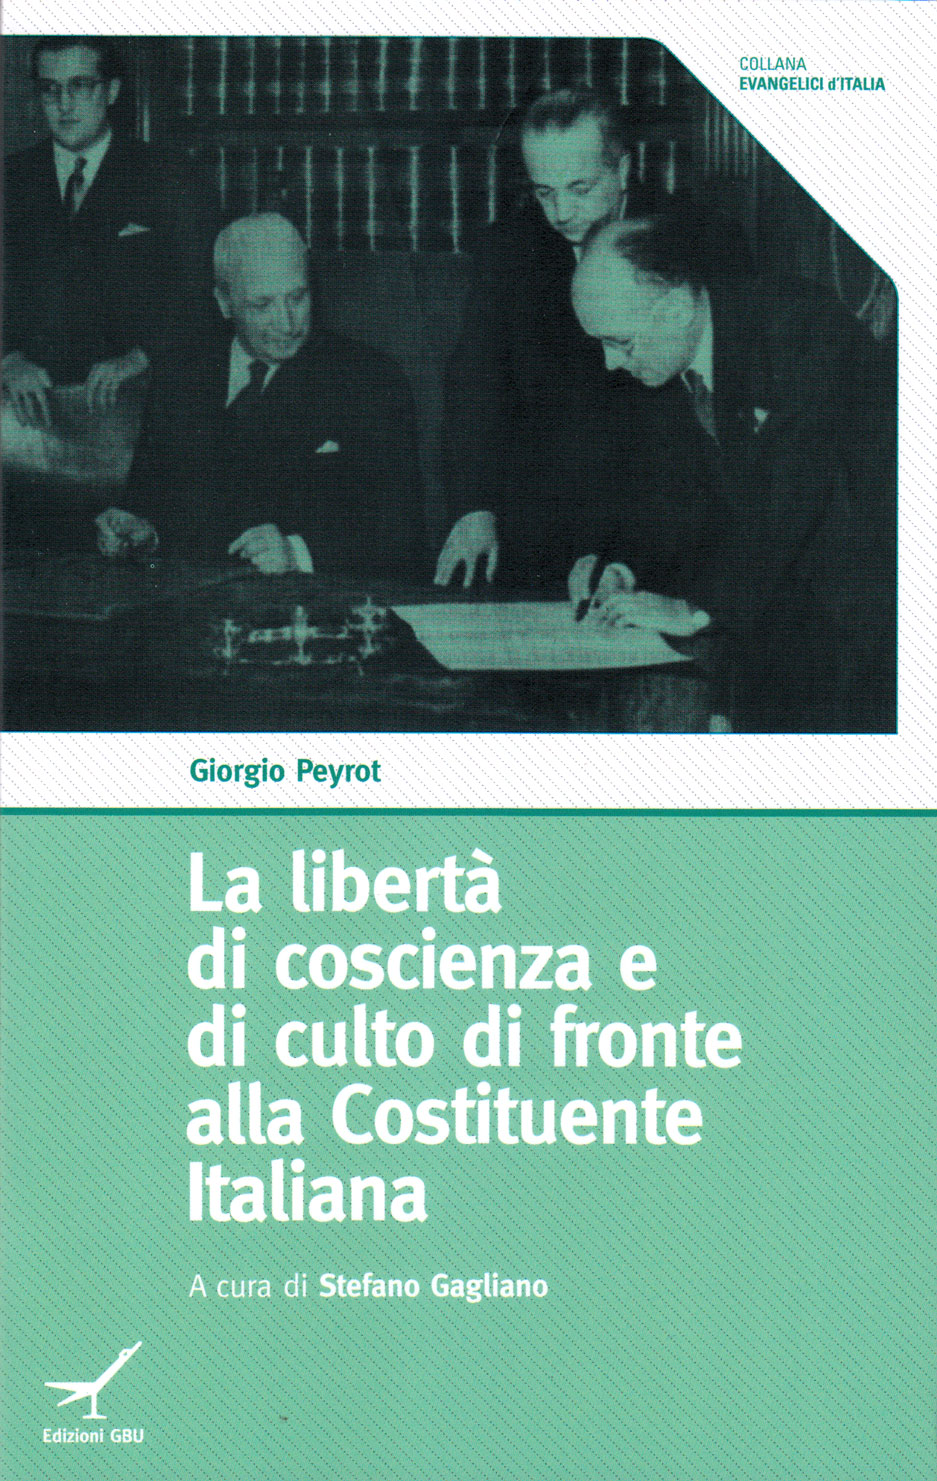 La libertà di coscienza e di culto di fronte alla Costituzione Italiana